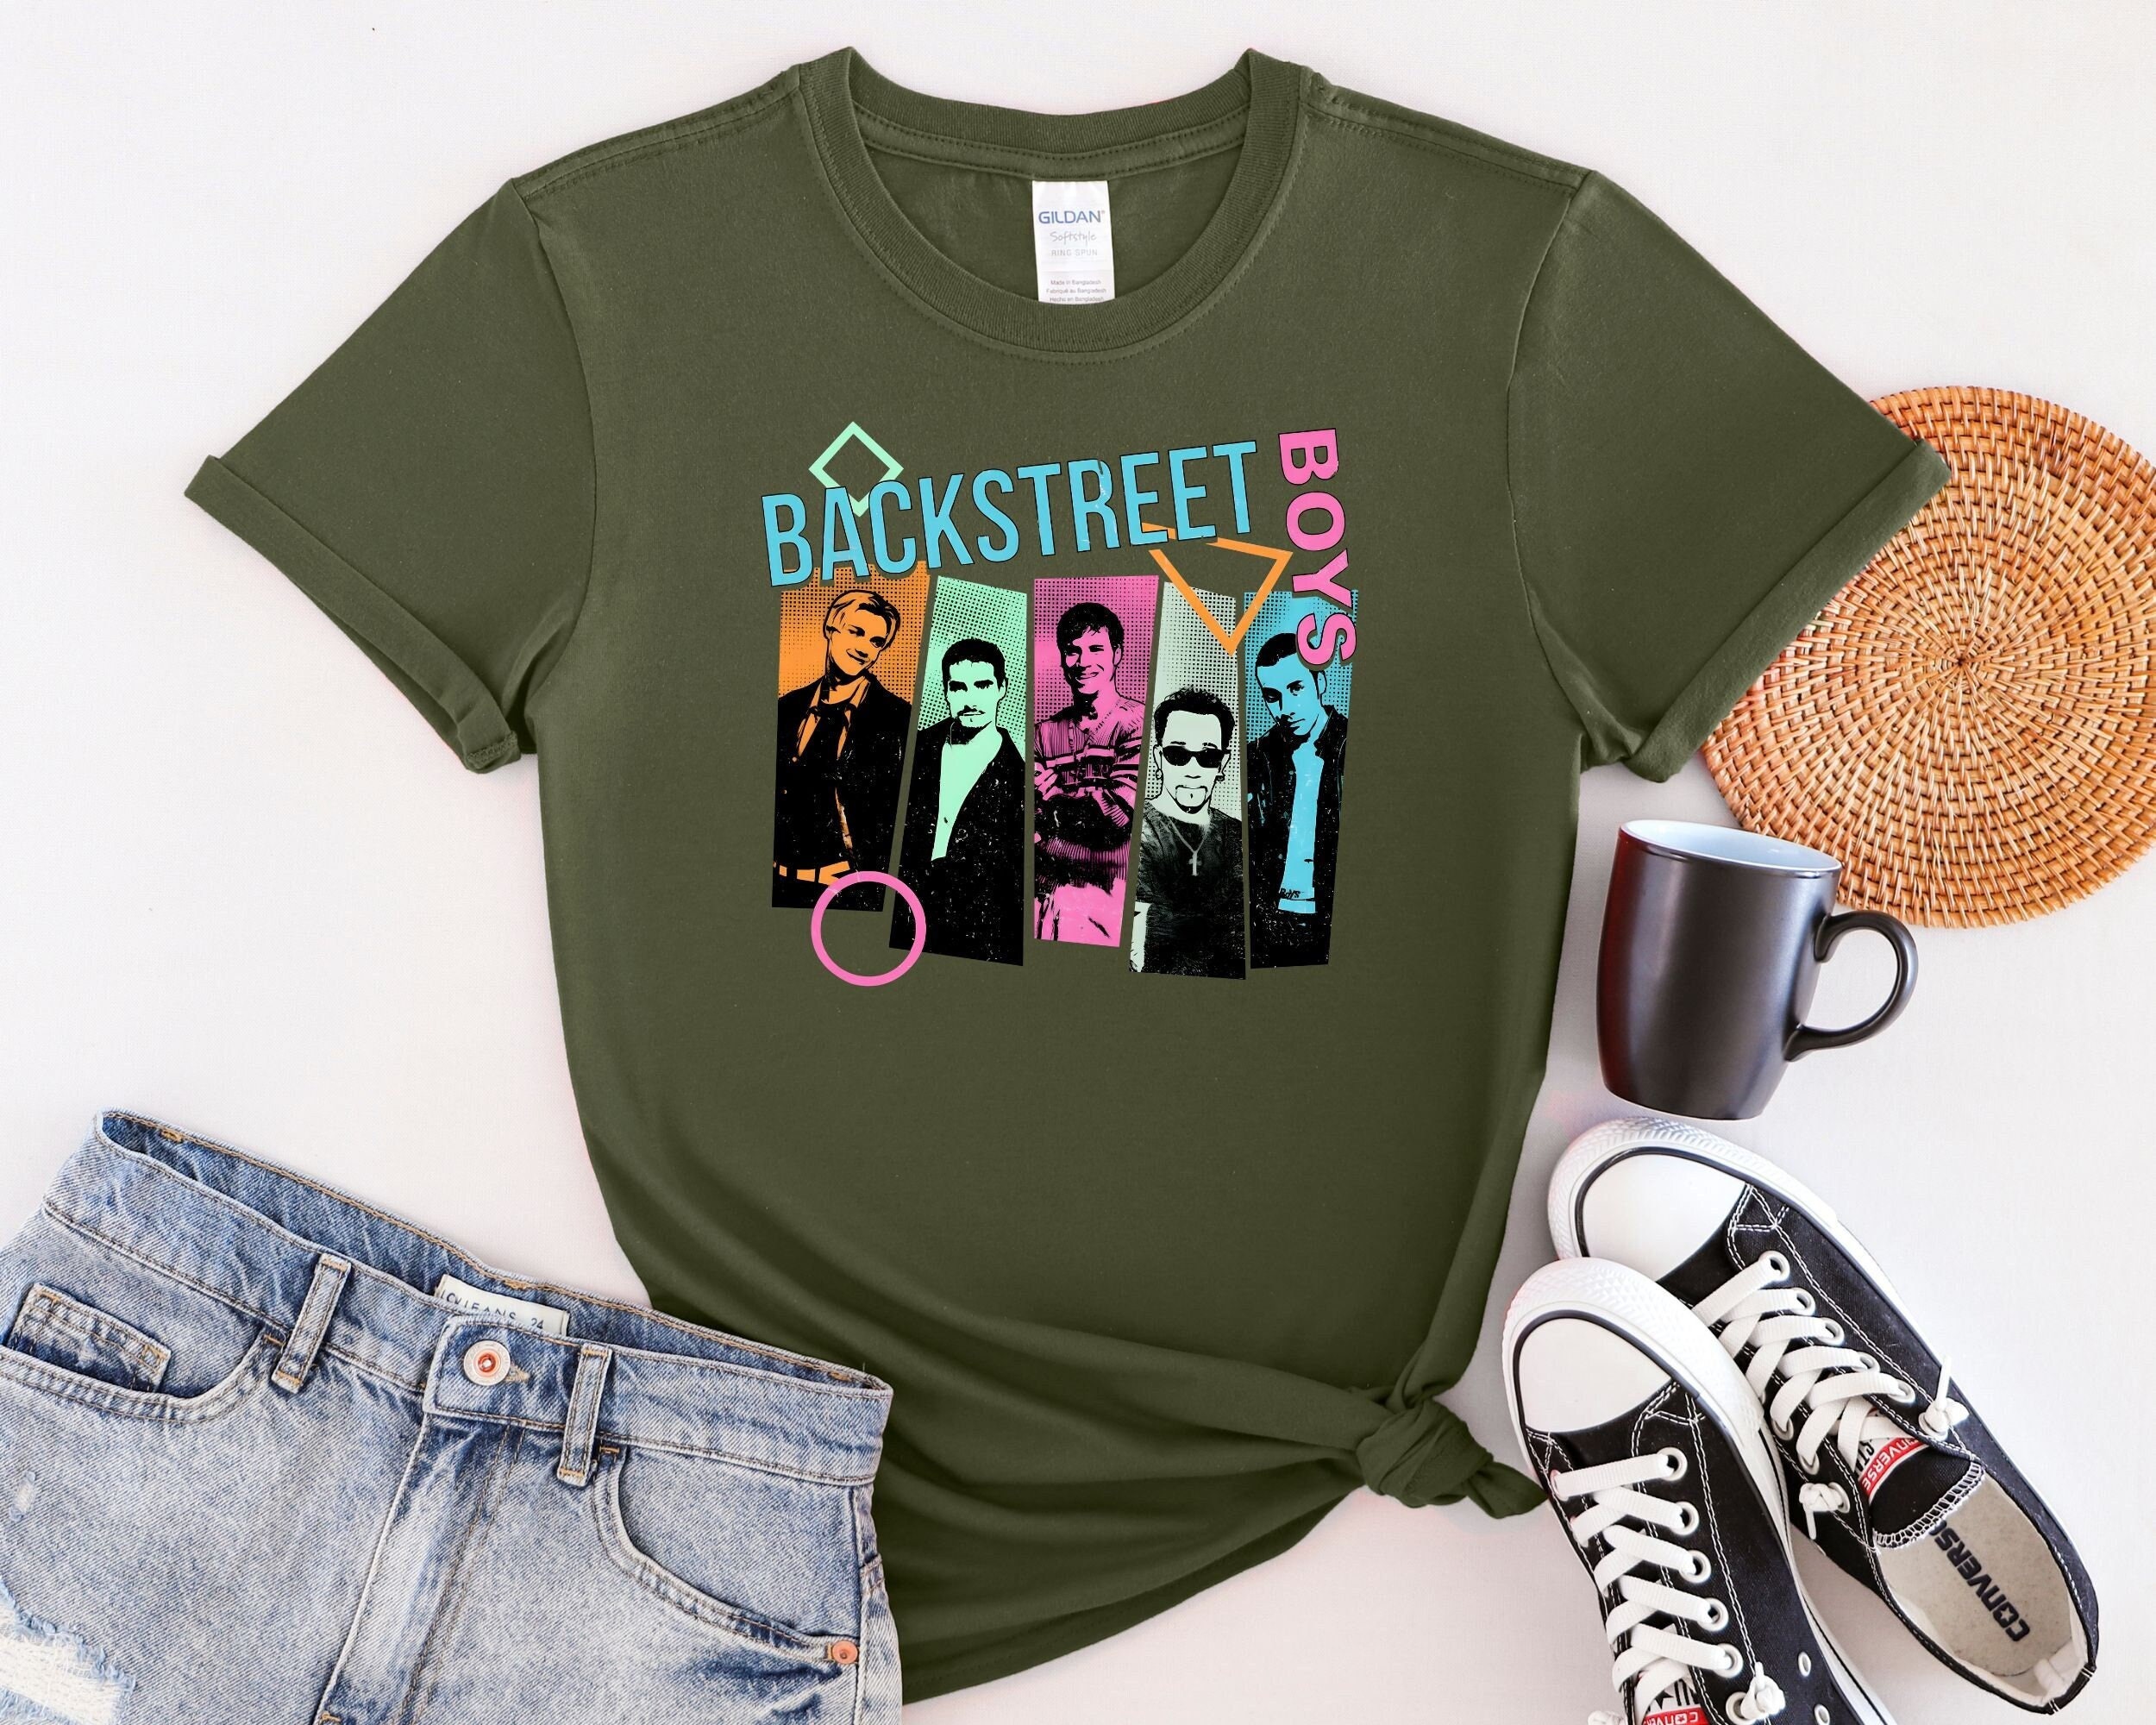 Backstreet Boys Shirt Women - Etsy